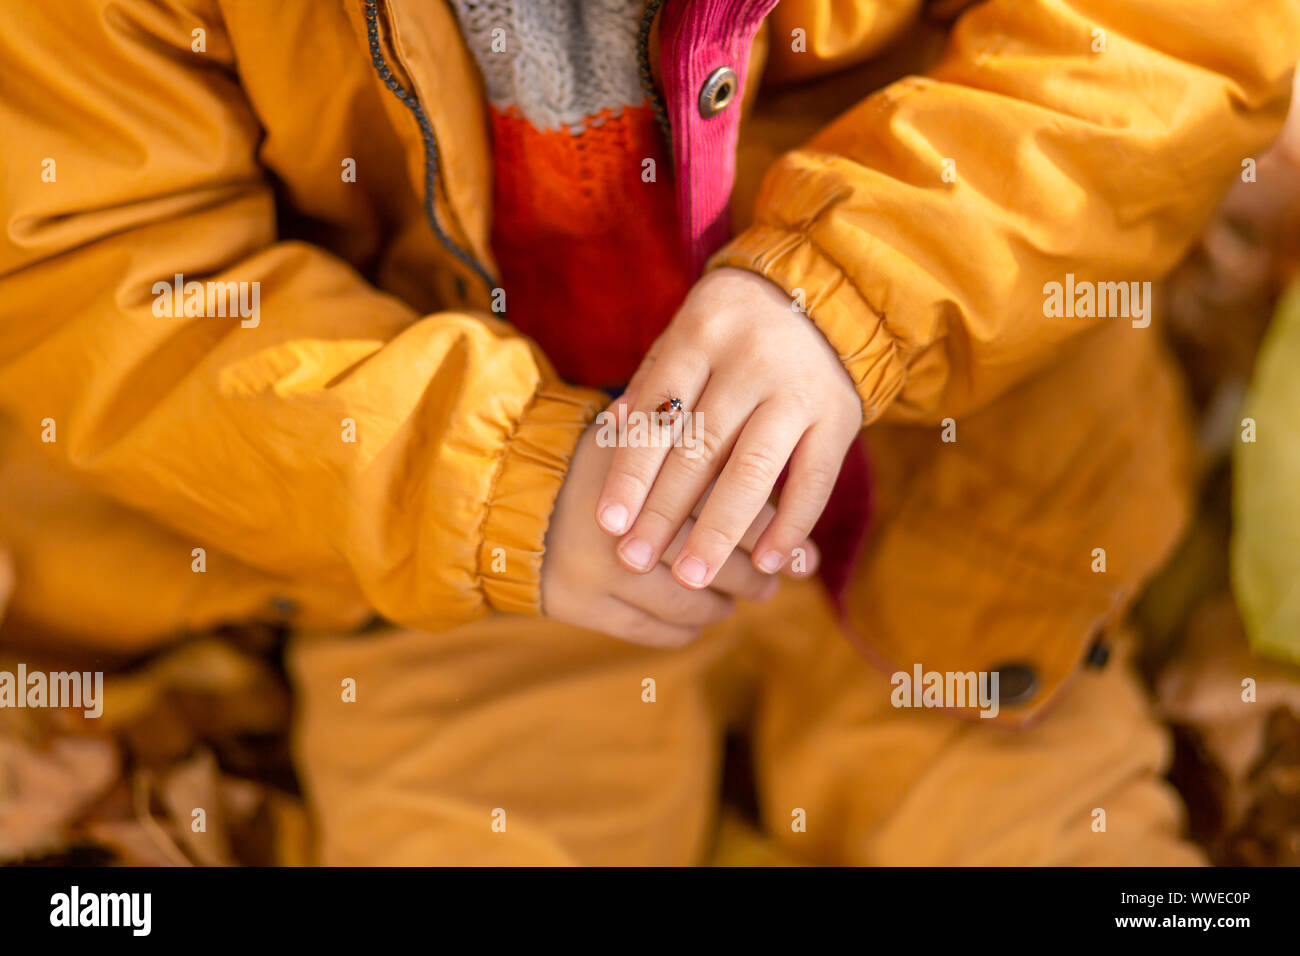 Un piccolo ragazzo in un parco in autunno si siede su foglie di giallo in una giacca gialla e mantiene una coccinella in bambini con le mani in mano. Un rosso coleottero scansioni sulle dita di Foto Stock